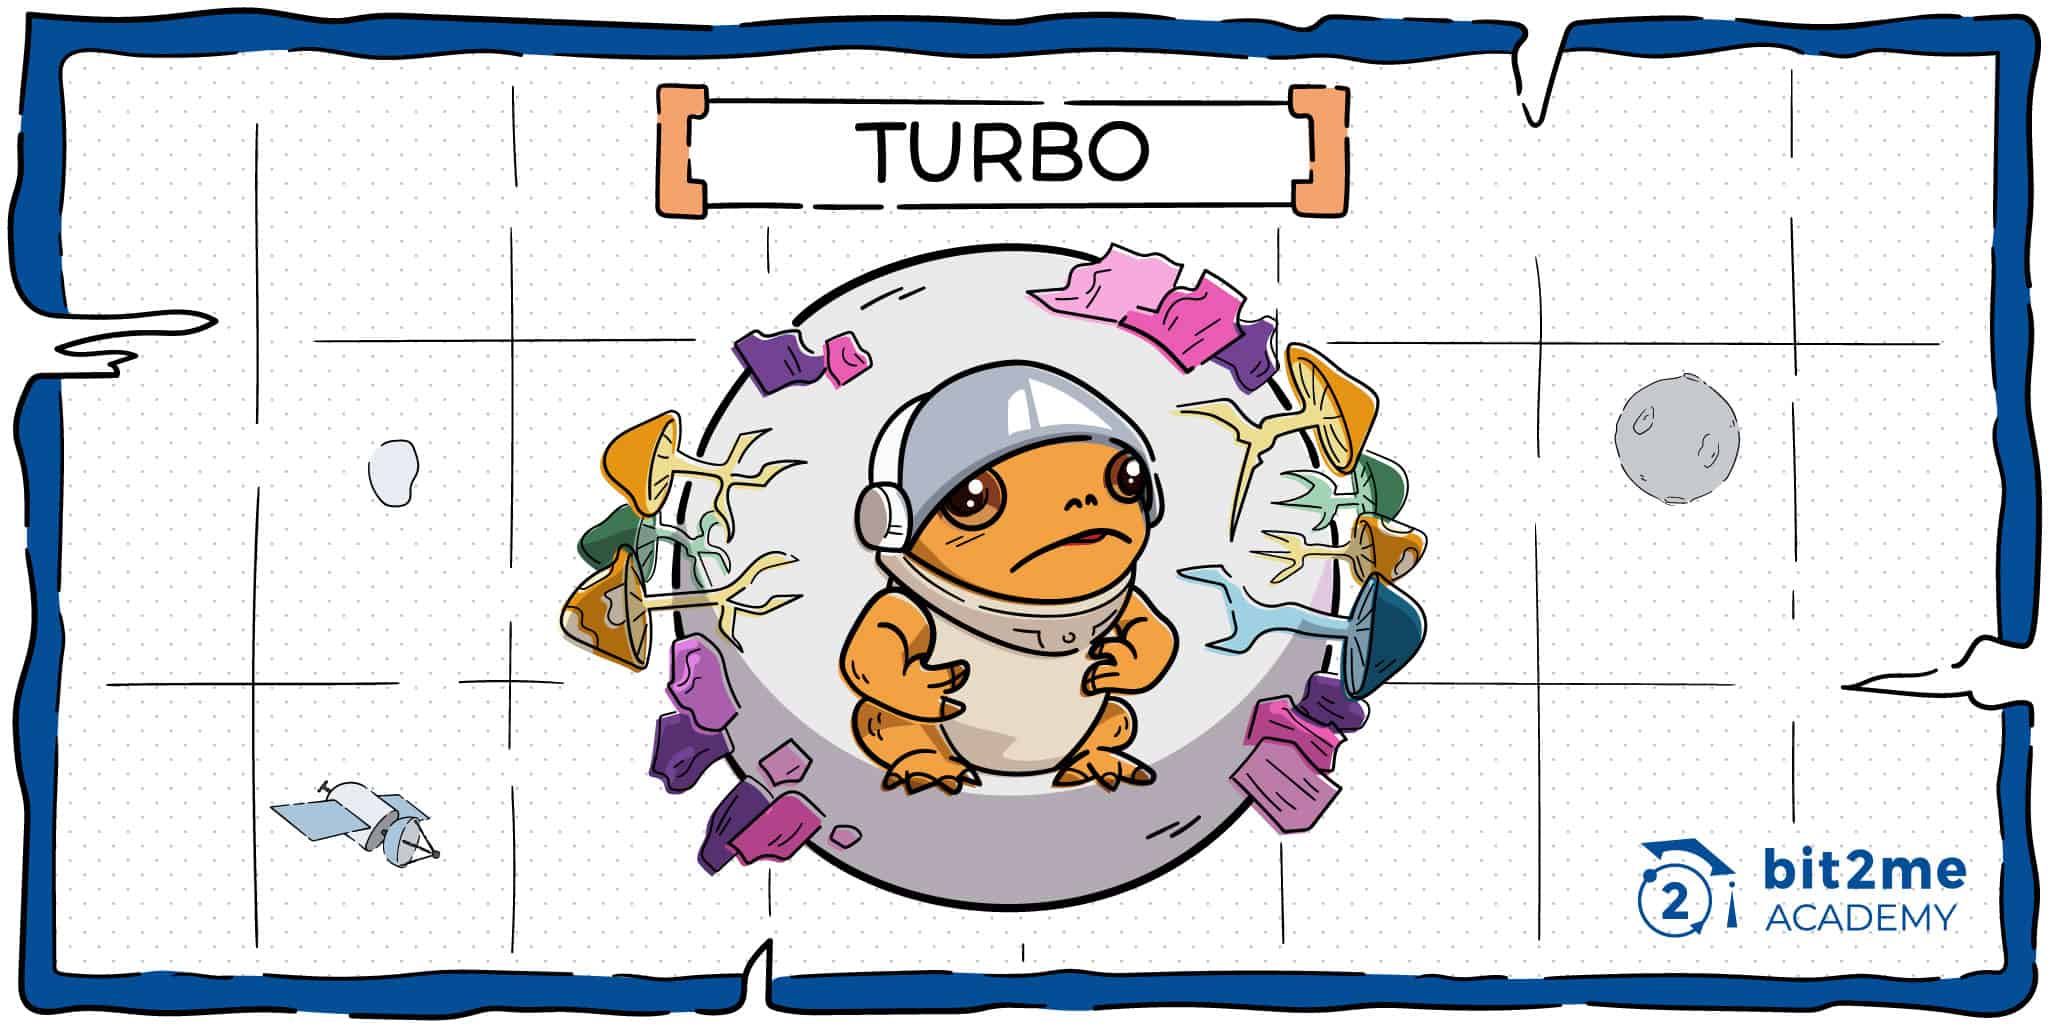 Qué es Turbo